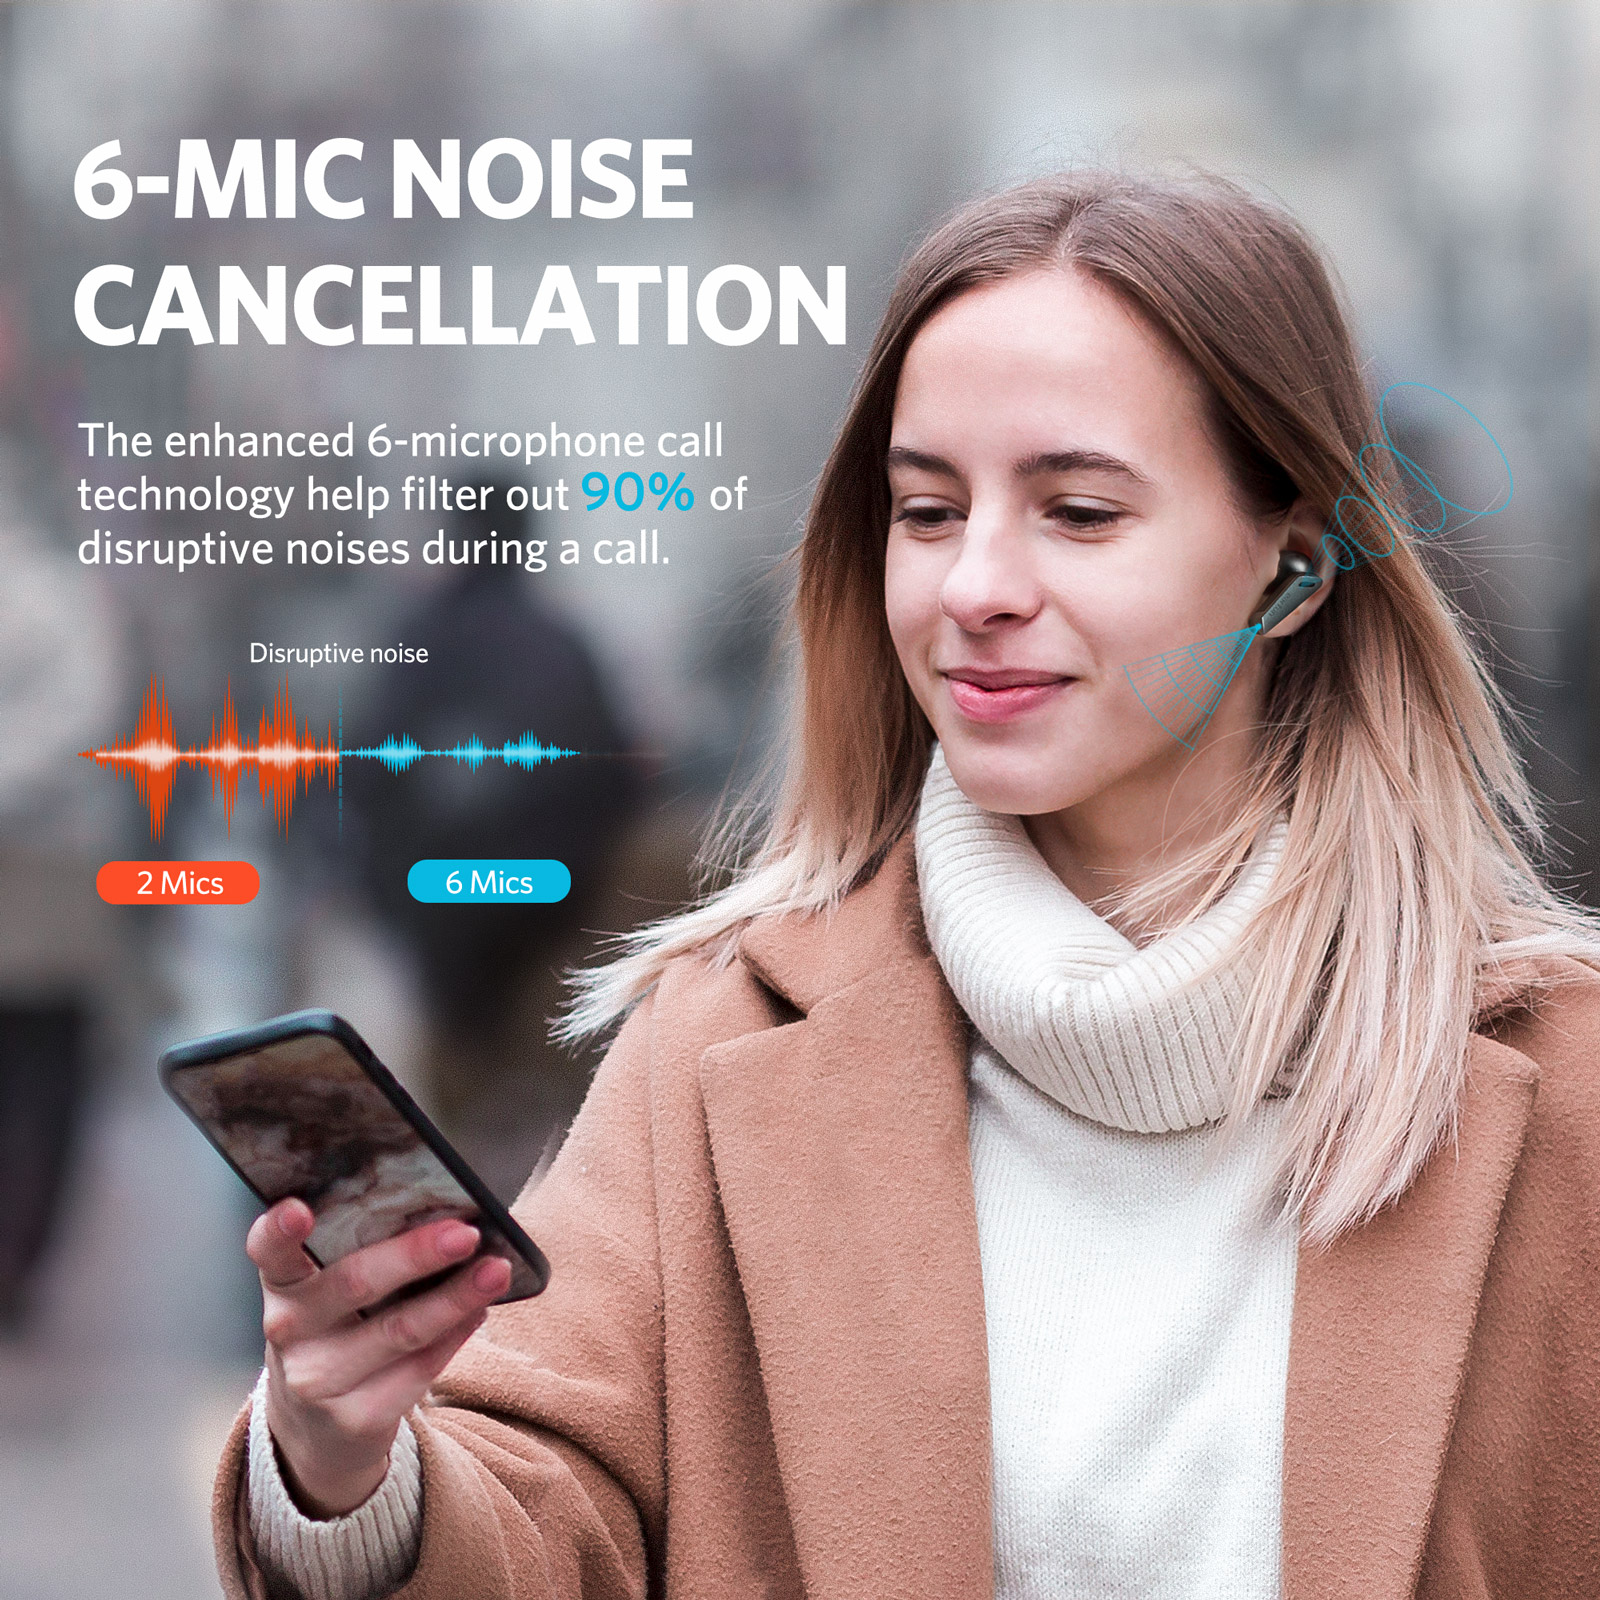 Tai nghe True Wireless EarFun Air Pro - Chống ồn chủ động ANC, Xuyên âm, Bluetooth 5.0, sạc Type-C, Pin 32 giờ, Chống nước IPX5 - Hàng chính hãng